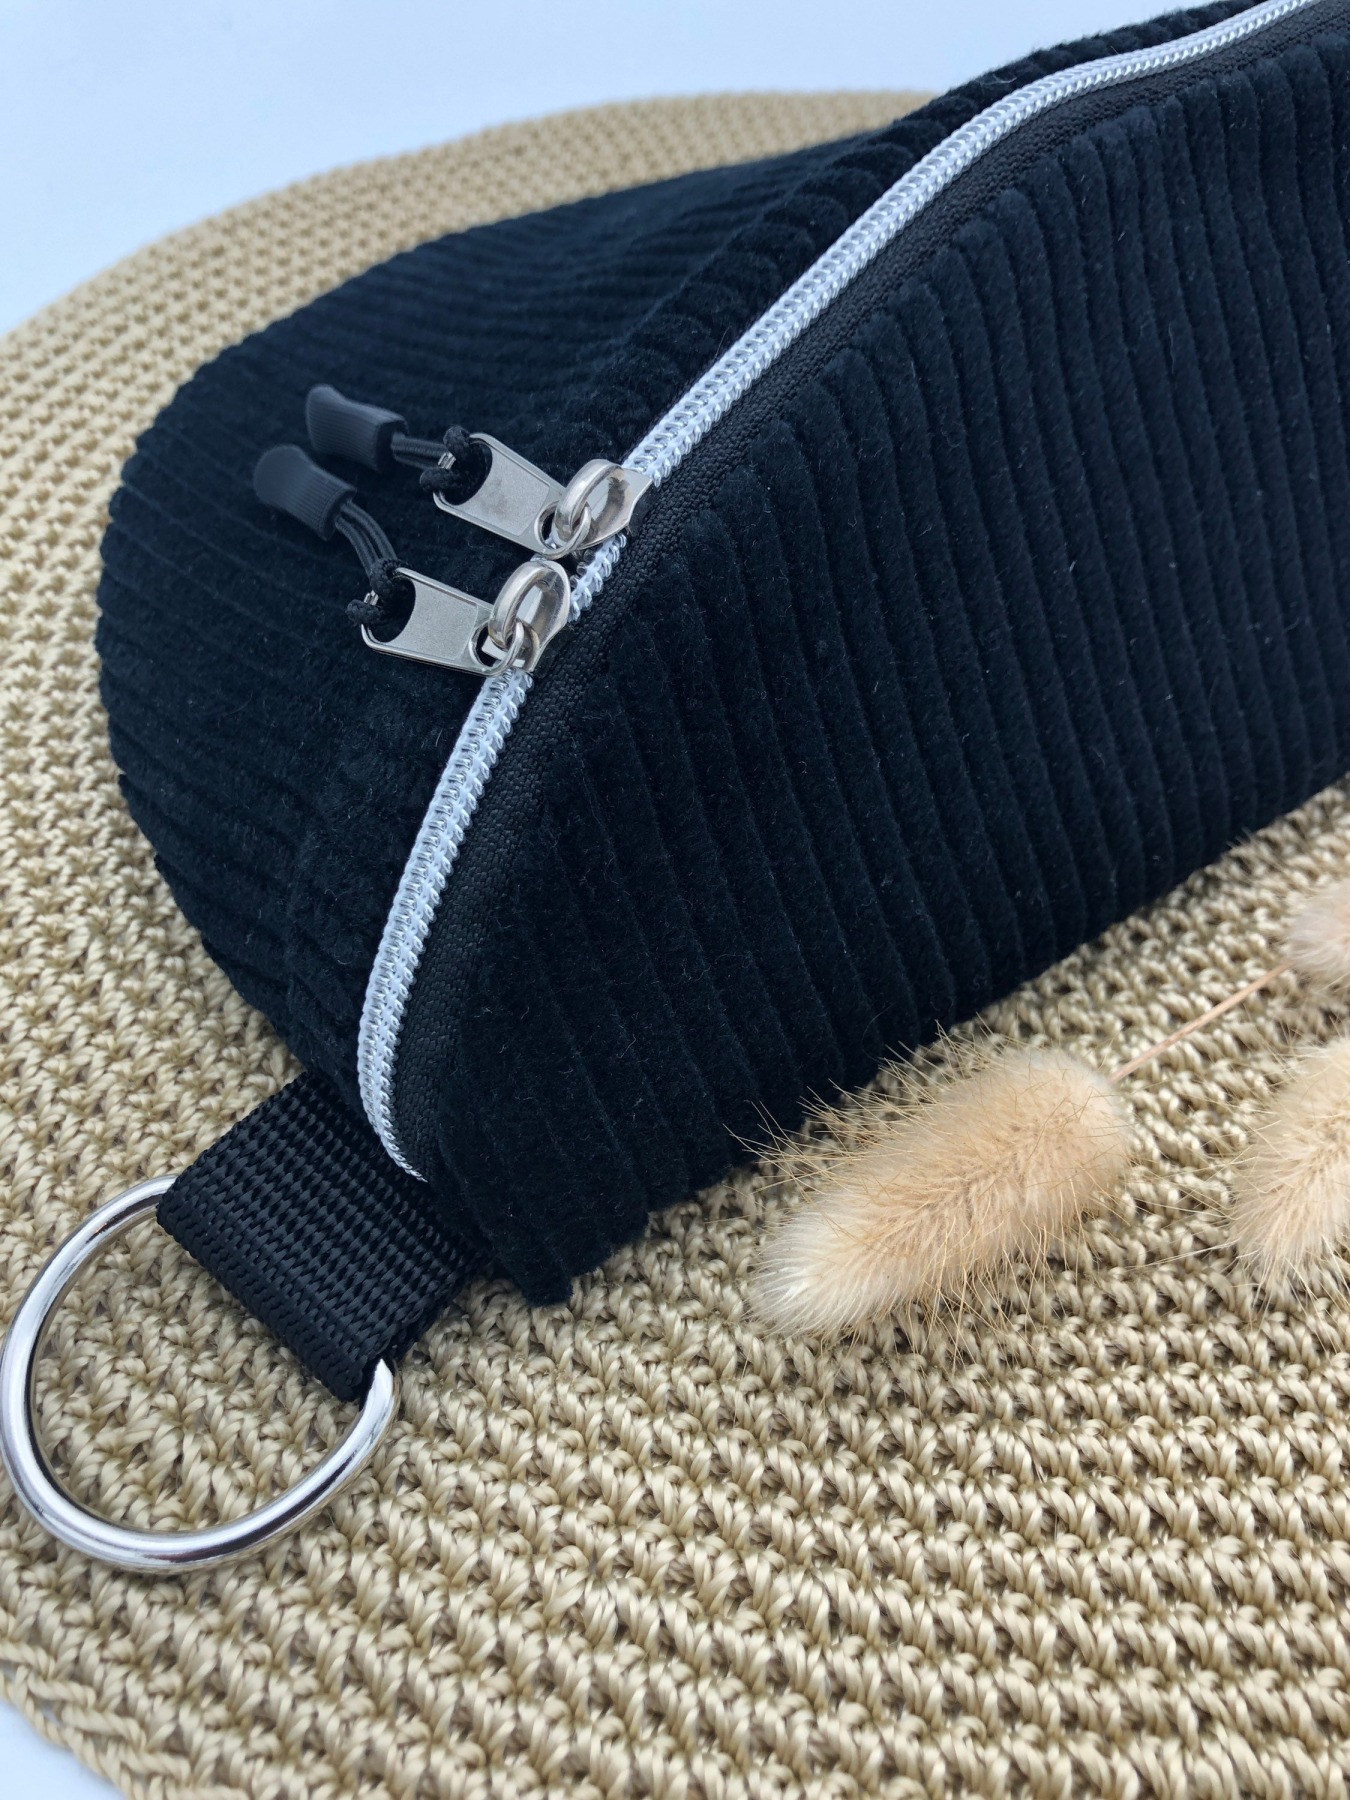 Bauchtasche, Crossbag, Cord schwarz mit Taschengurt gestreift schwarz/weiß/silber, Hipbag, leicht